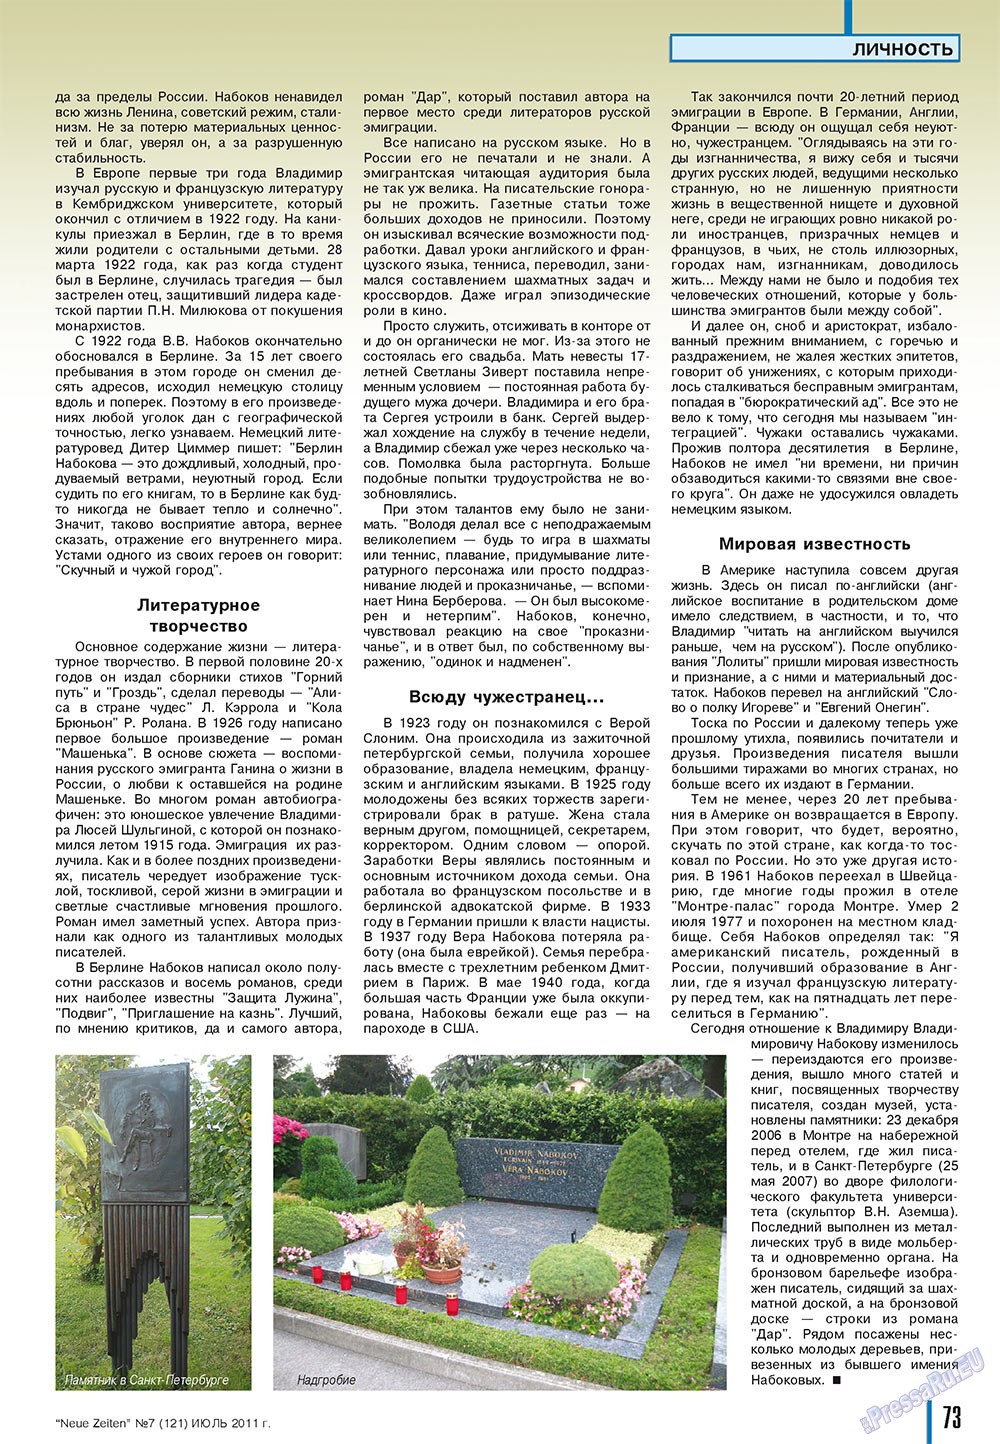 Neue Zeiten, журнал. 2011 №7 стр.73